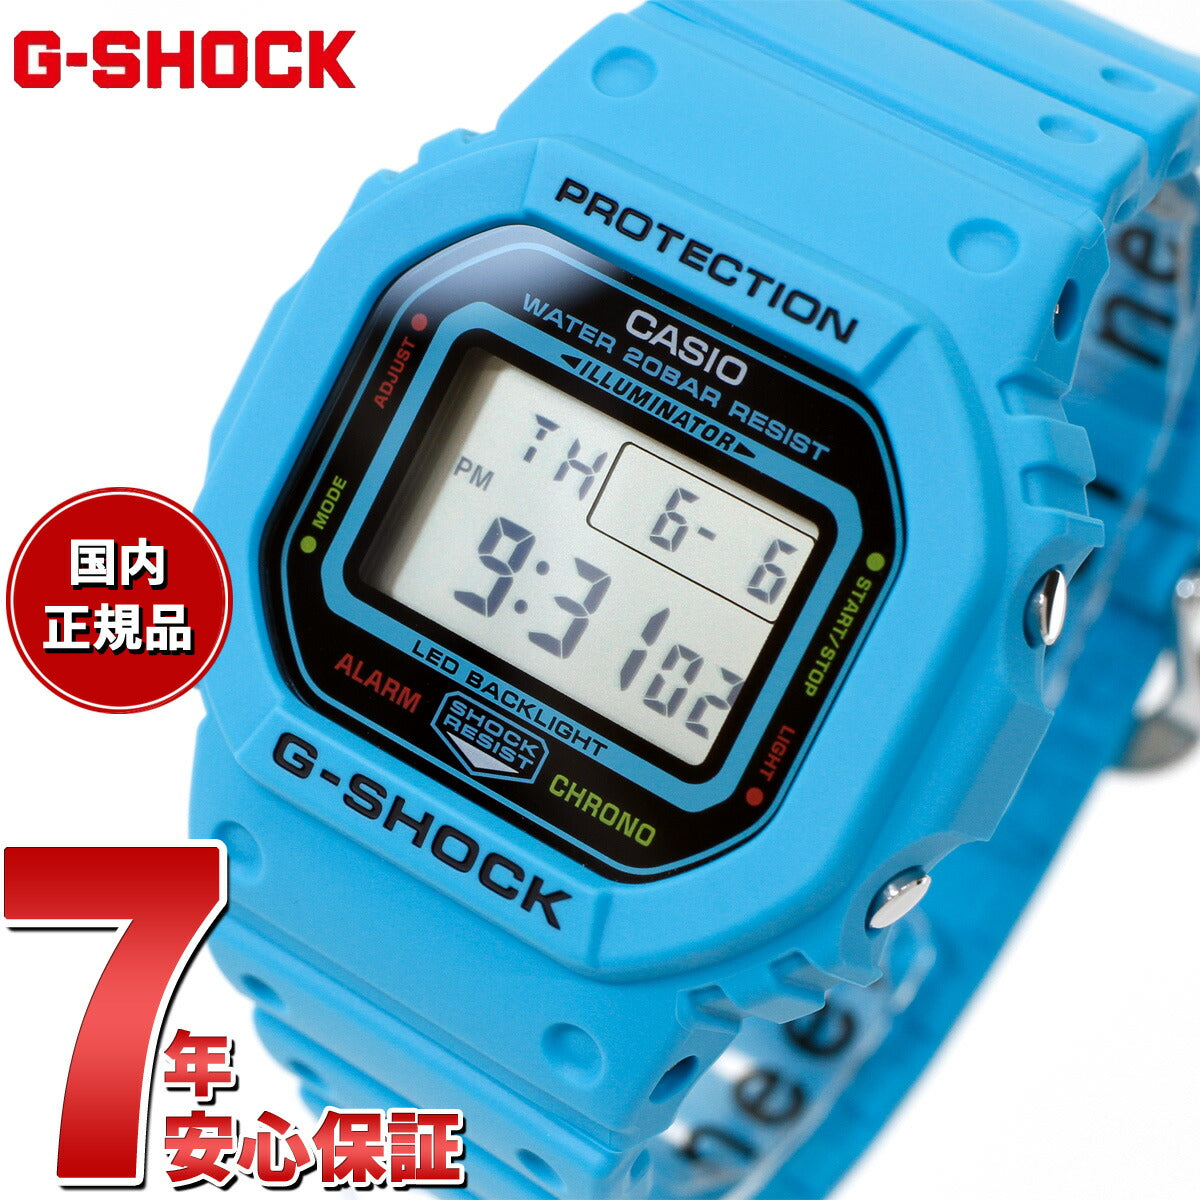 G-SHOCK デジタル カシオ Gショック CASIO 腕時計 メンズ DW-5600EP-2JF エナジー ENERGY PACK ブル –  neel selectshop